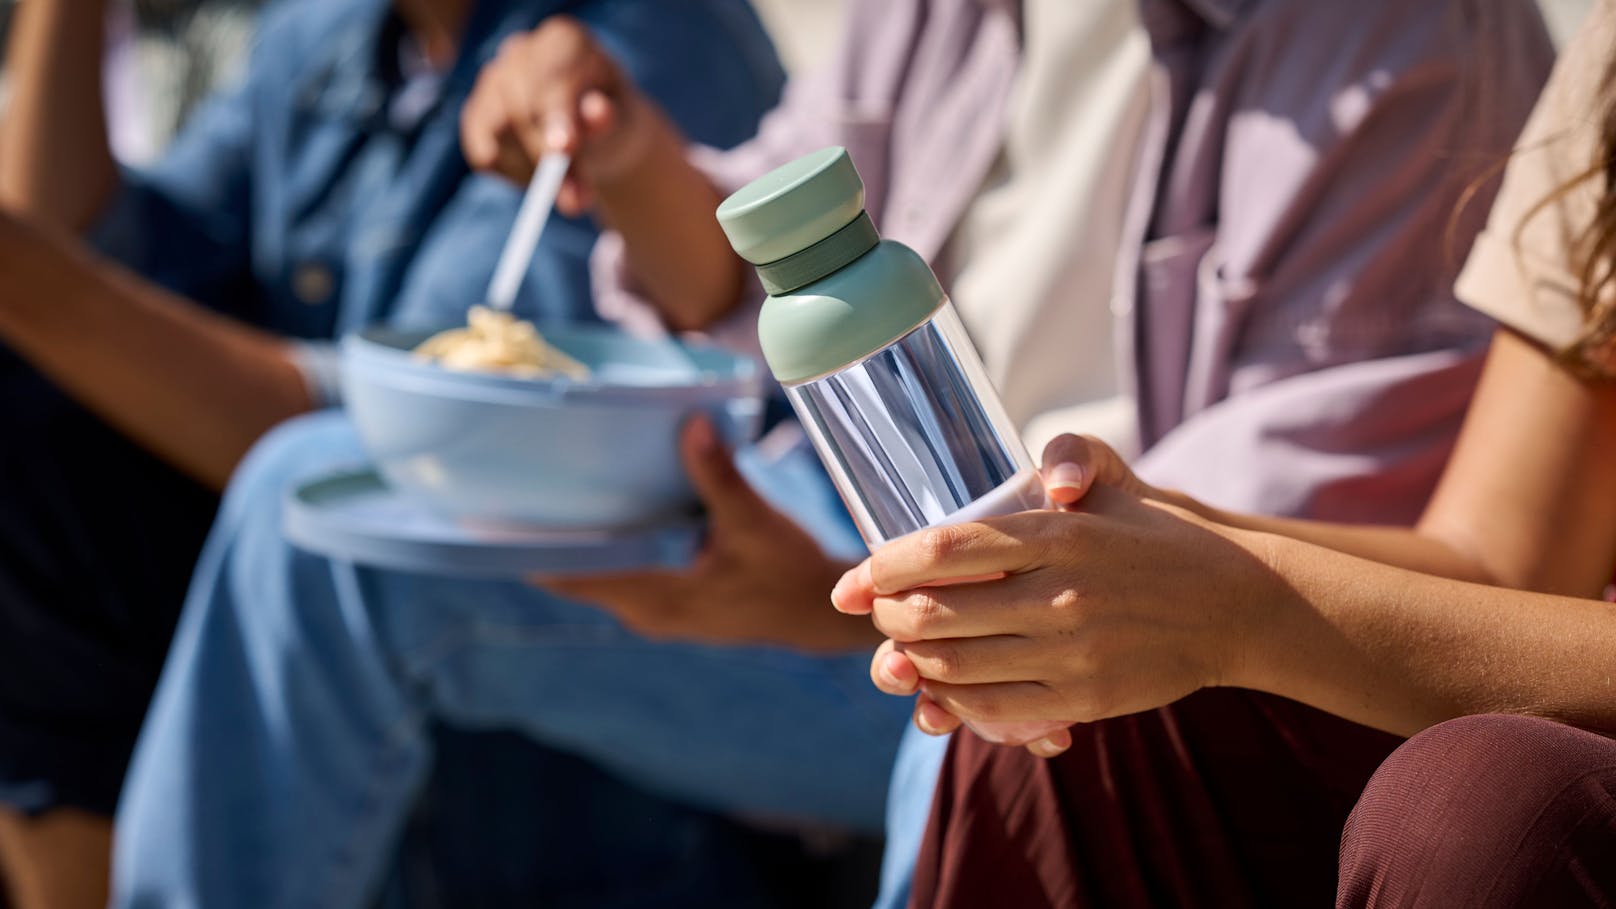 Gewinne ein Mepal VITA Set mit Trinkflasche & Lunchbowl